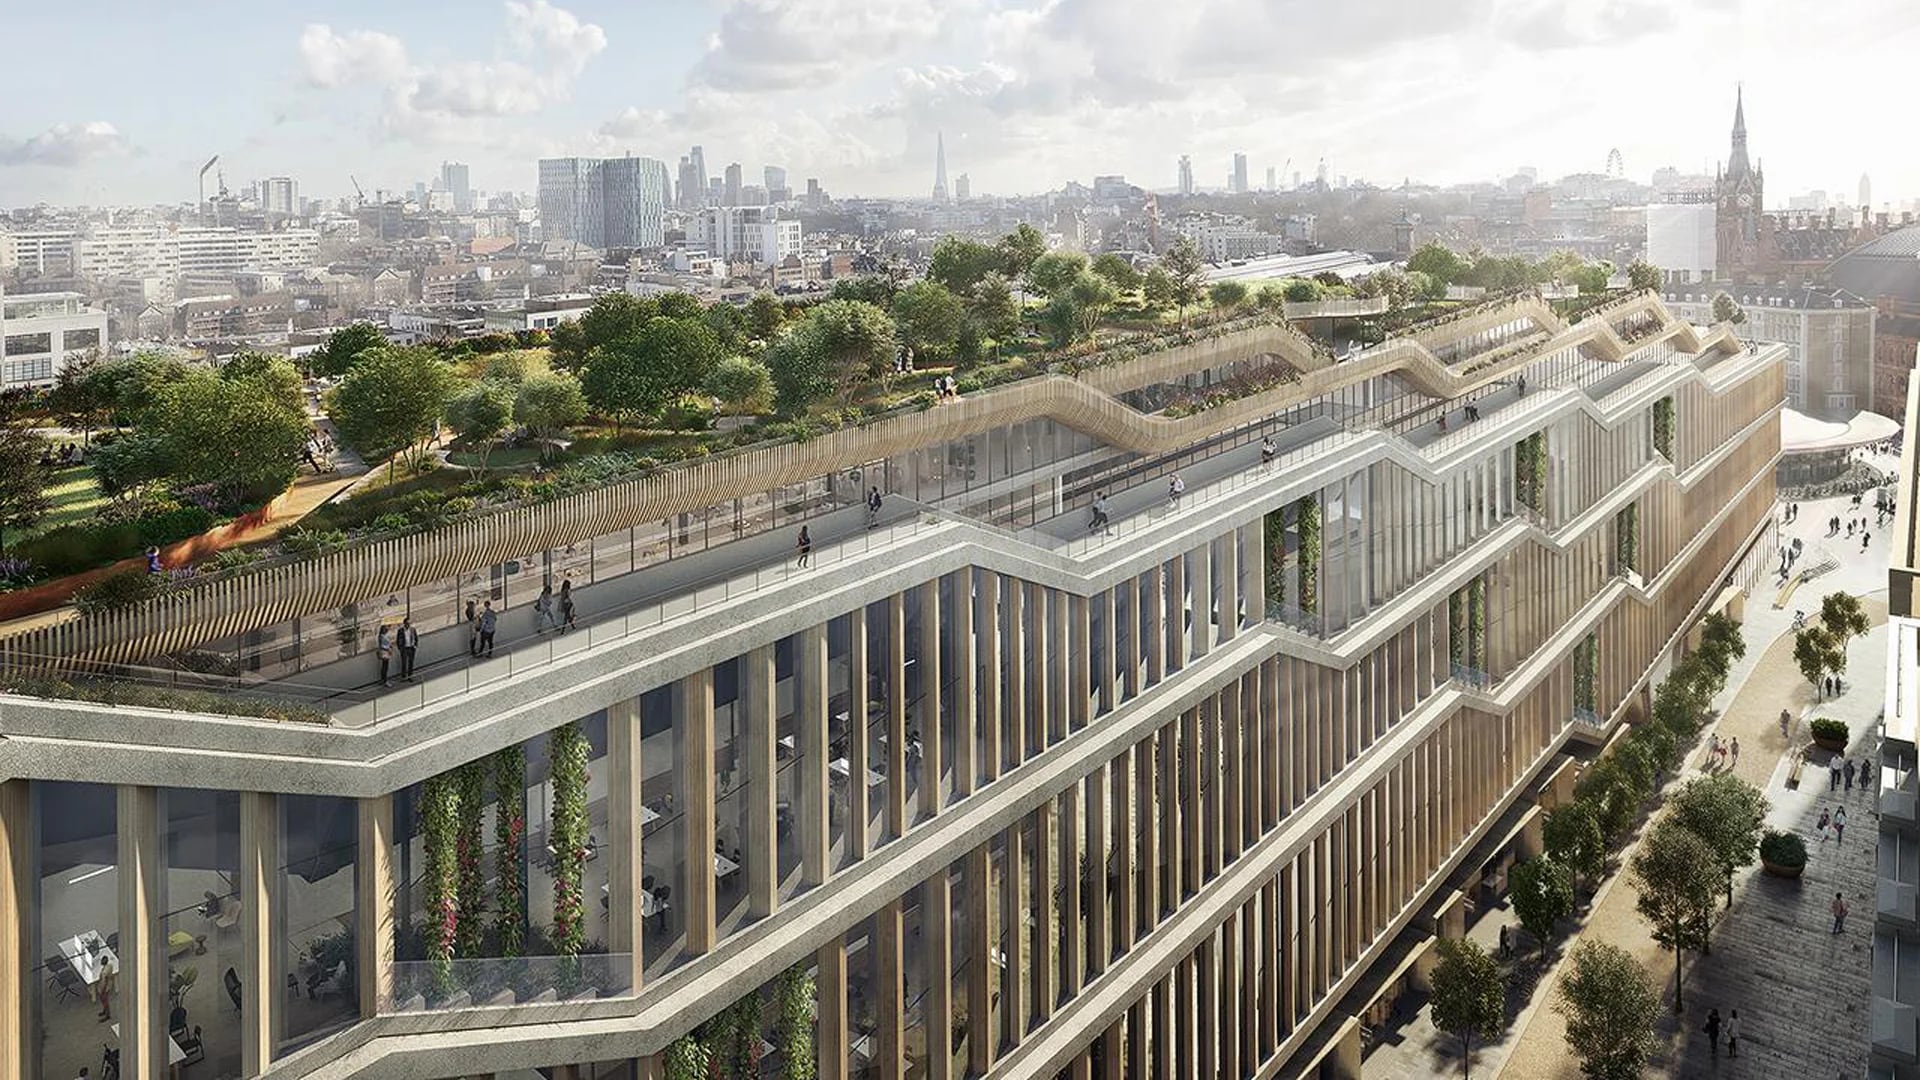 Contará con un jardín que cubrirá todo el techo del inmueble, esta innovadora idea se extenderá a lo largo de 300 metros con desniveles (Google)